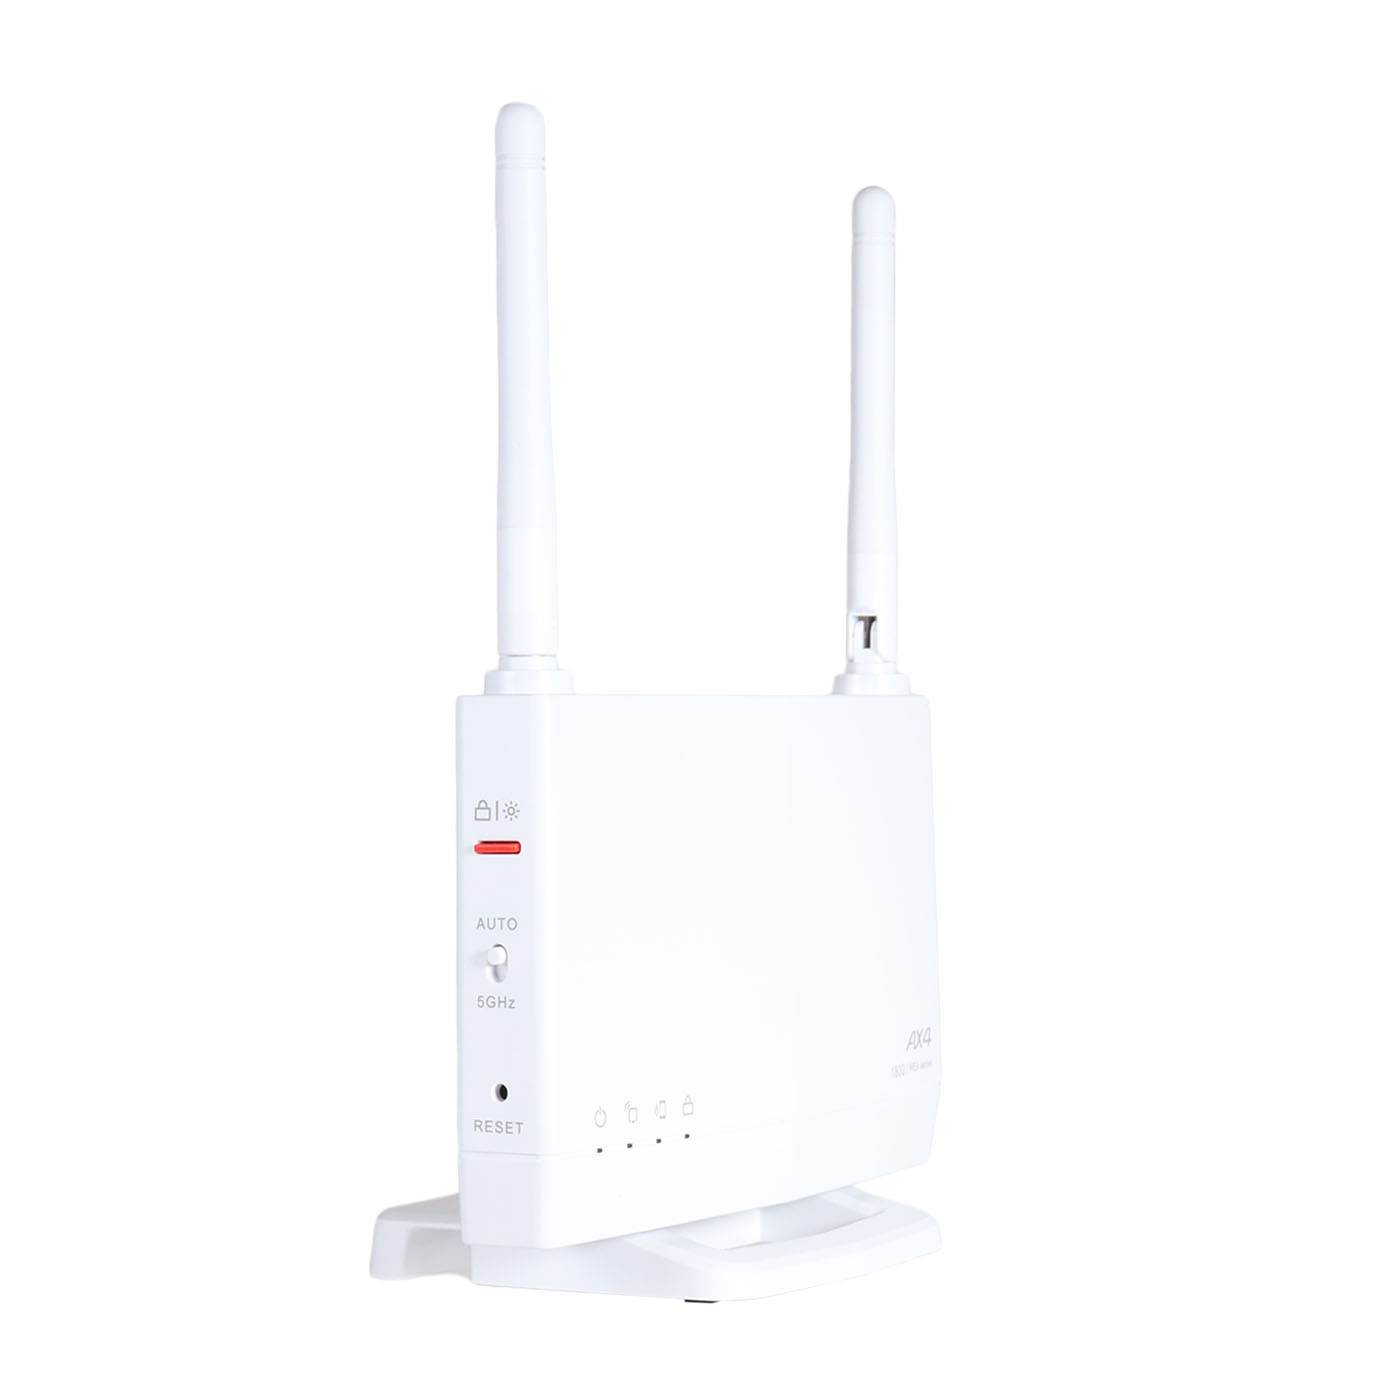 バッファロー WEX-1800AX4EA D 無線LAN中継機 WiFi 11ax ac n a g b